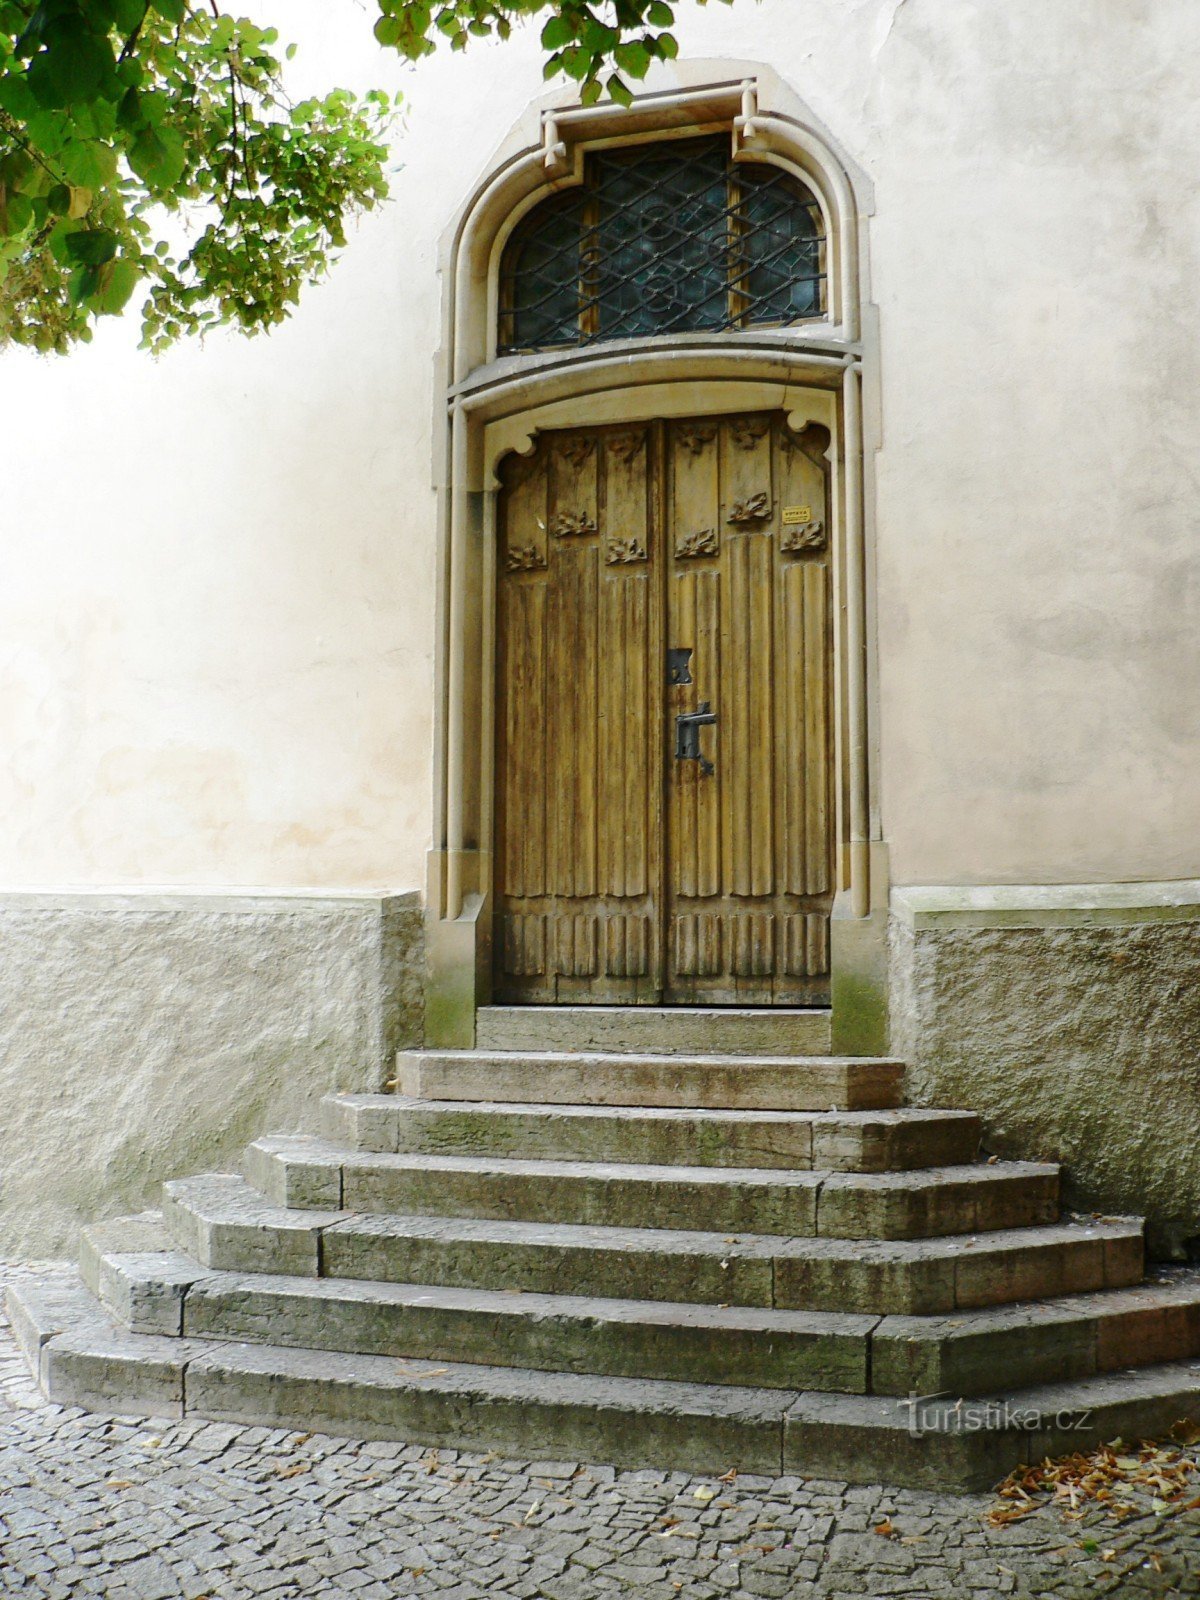 intrarea în sacristia bisericii, care a fost recent deschisă după 1901, conform